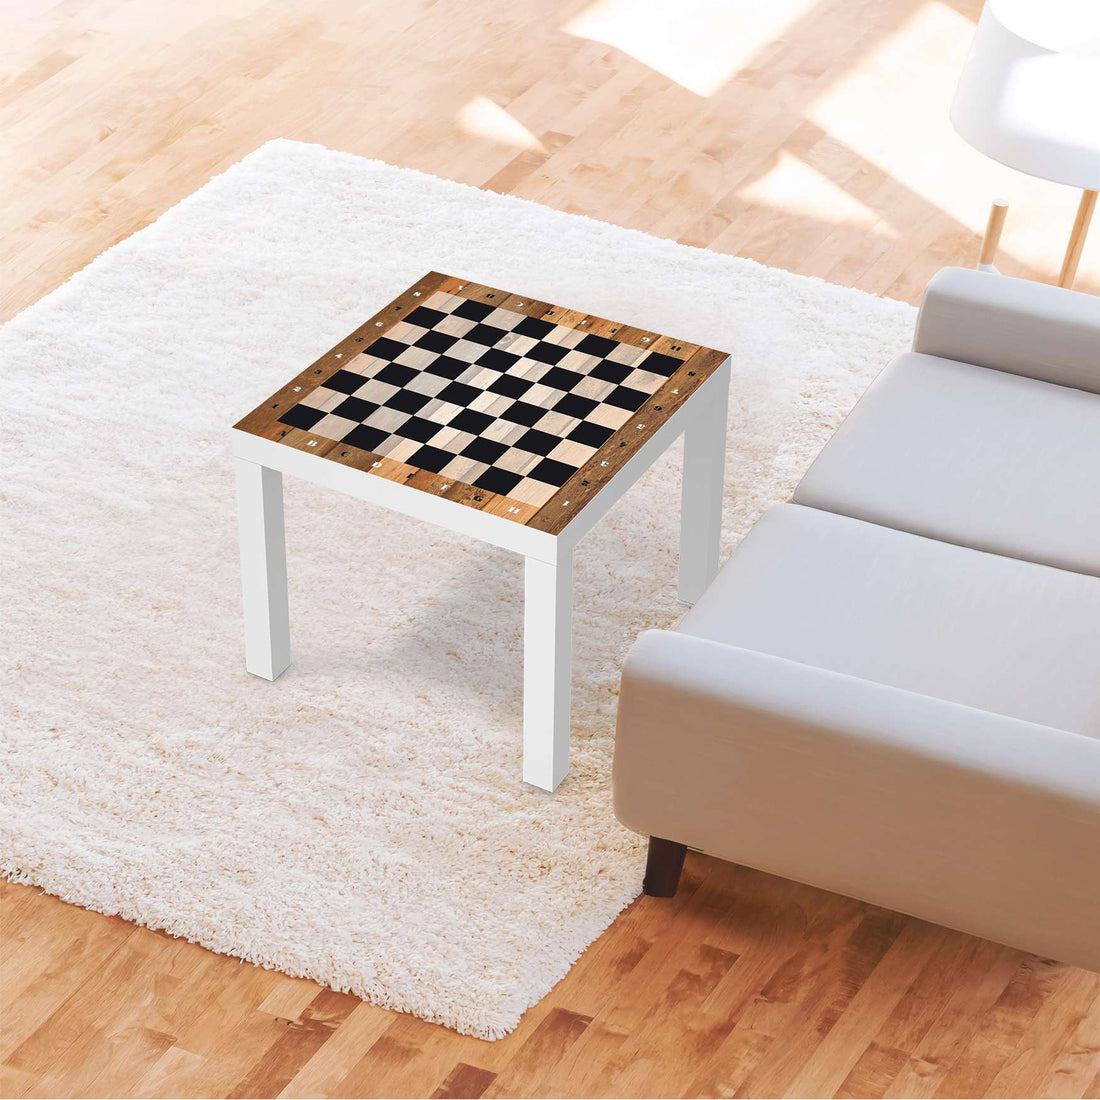 Möbelfolie Spieltisch Schach - IKEA Lack Tisch 55x55 cm - Wohnzimmer